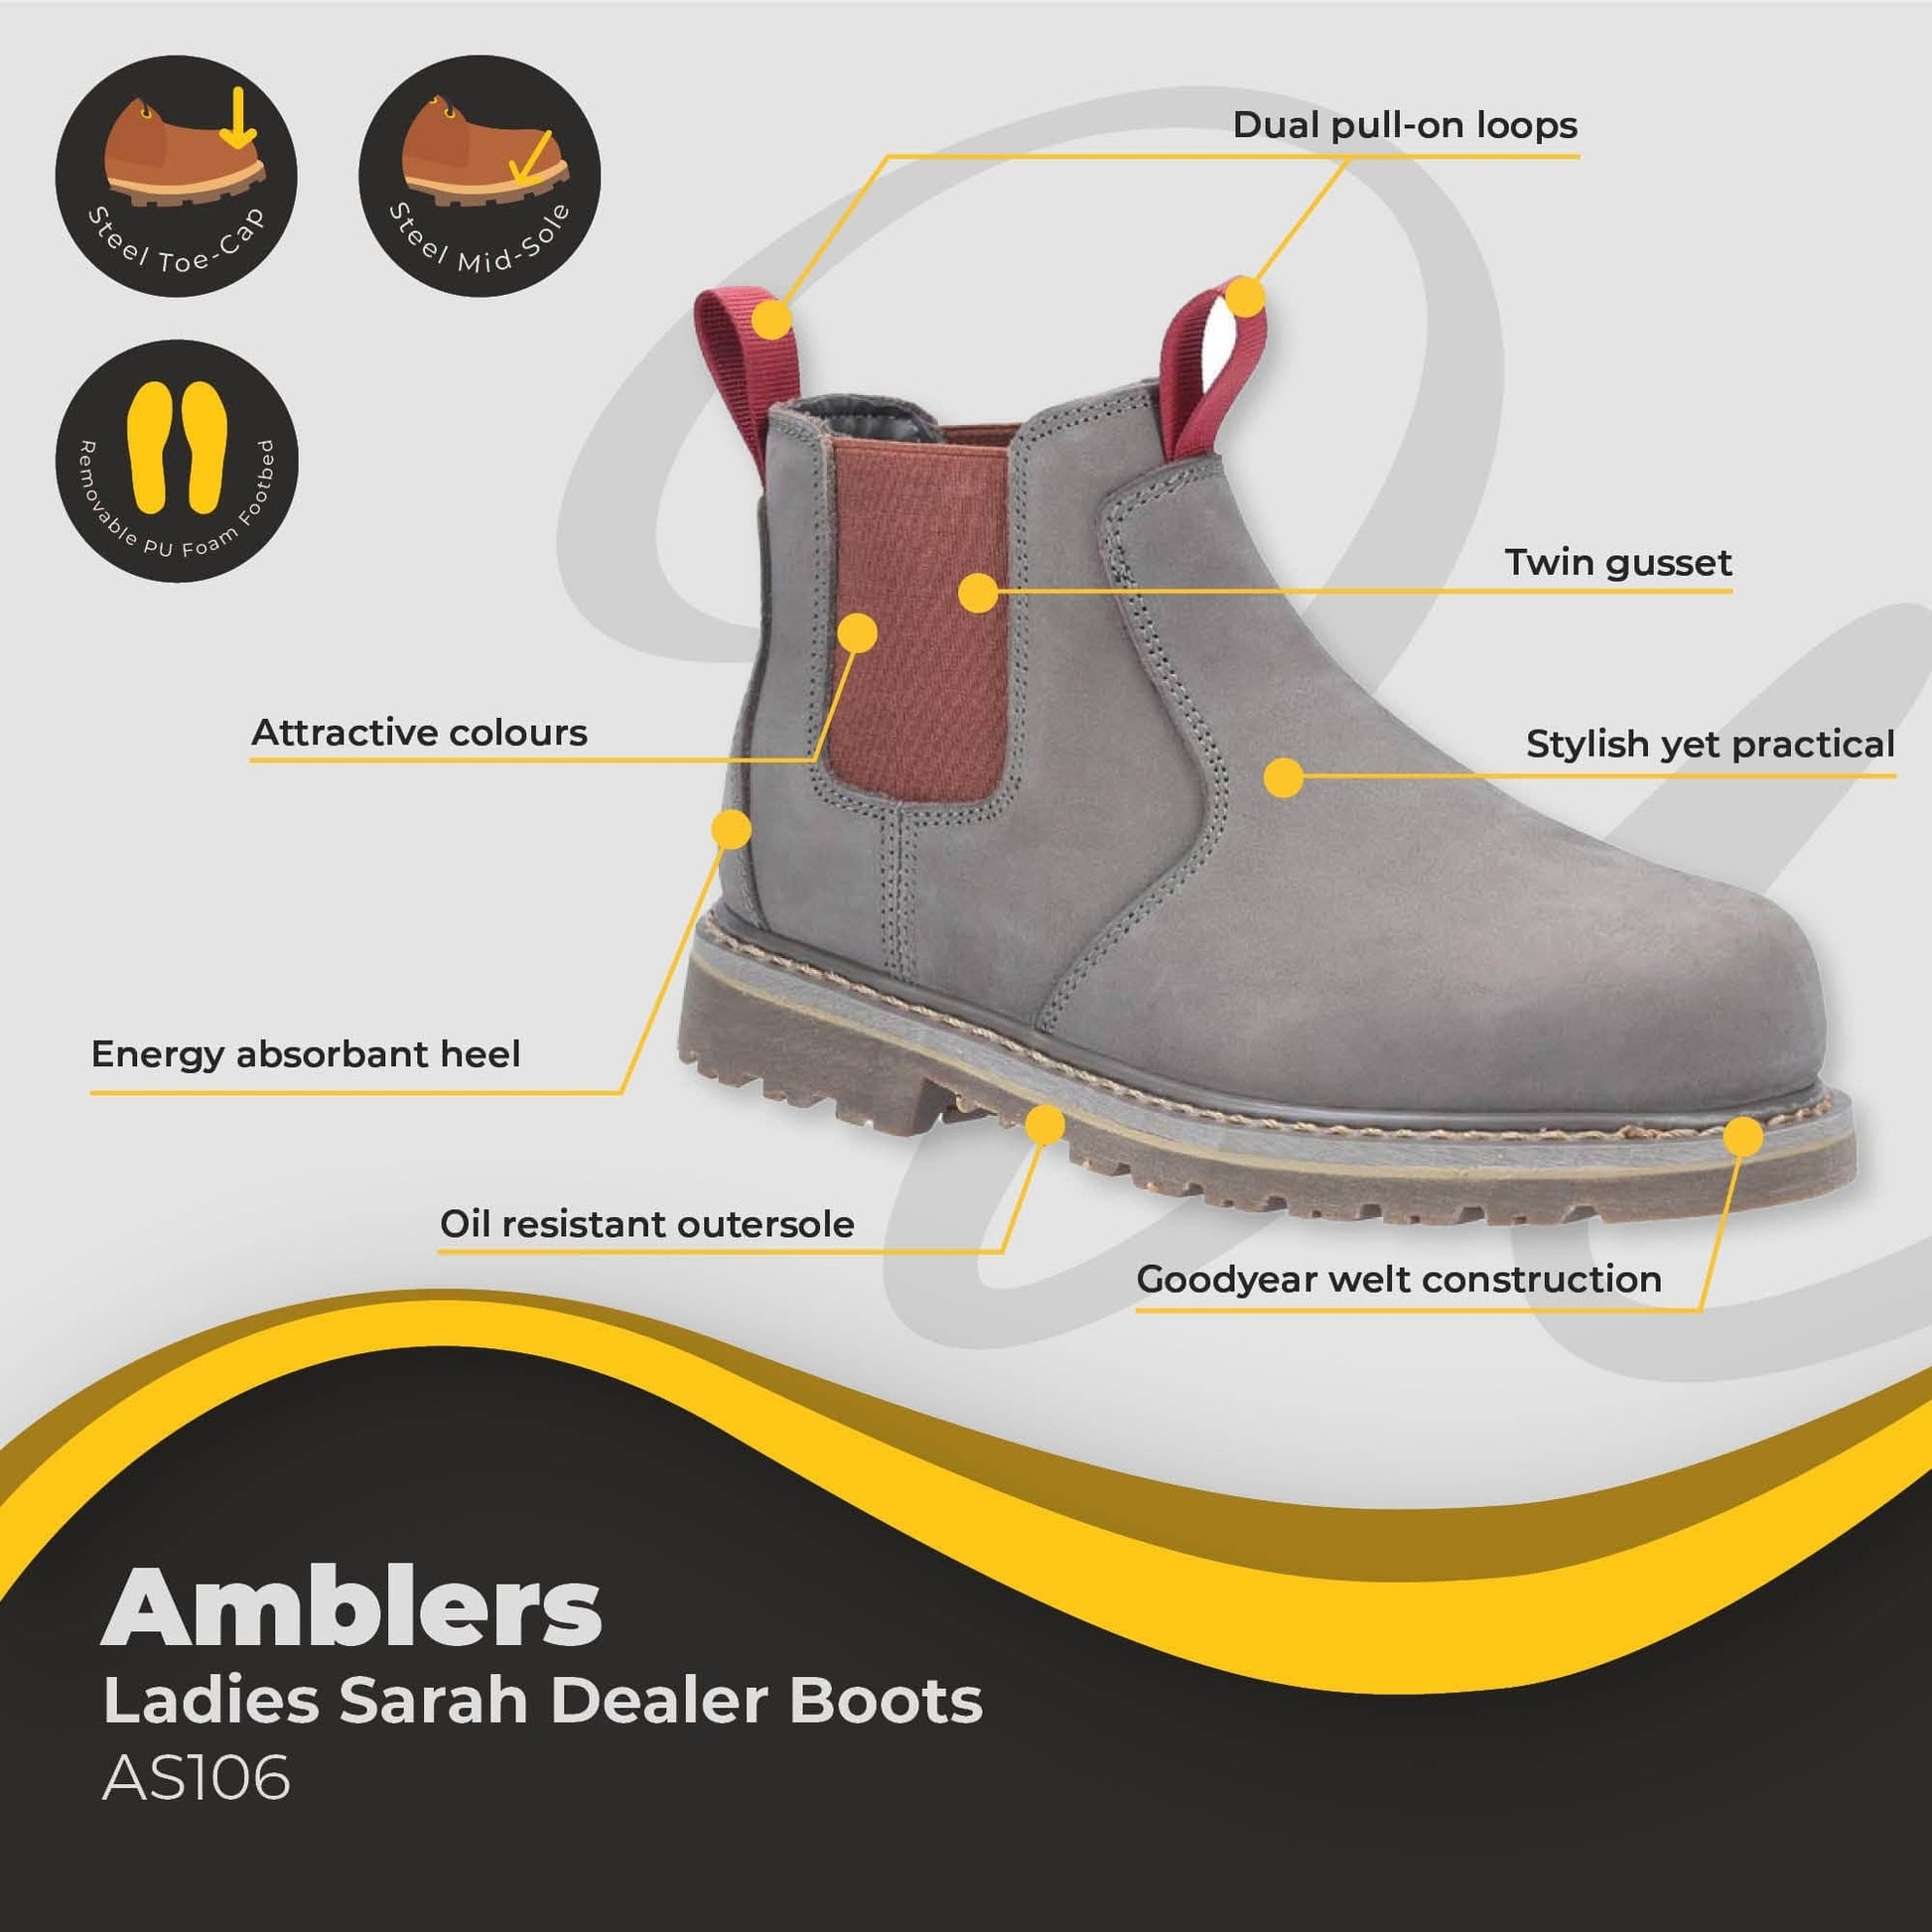 amblers sarah ladies dealer boot as106 dd316 03 boot